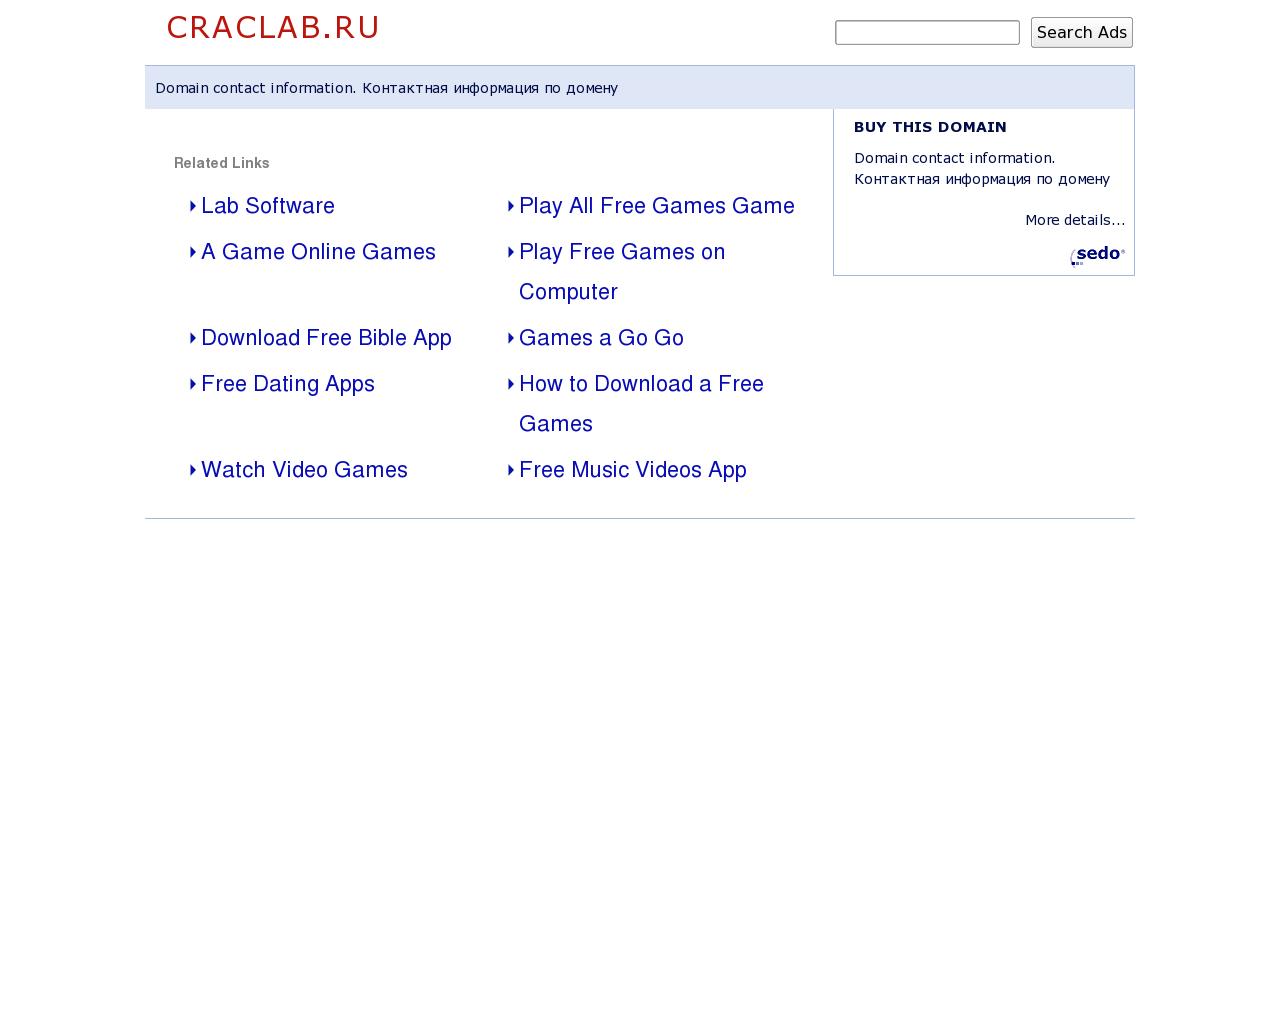 Изображение сайта craclab.ru в разрешении 1280x1024